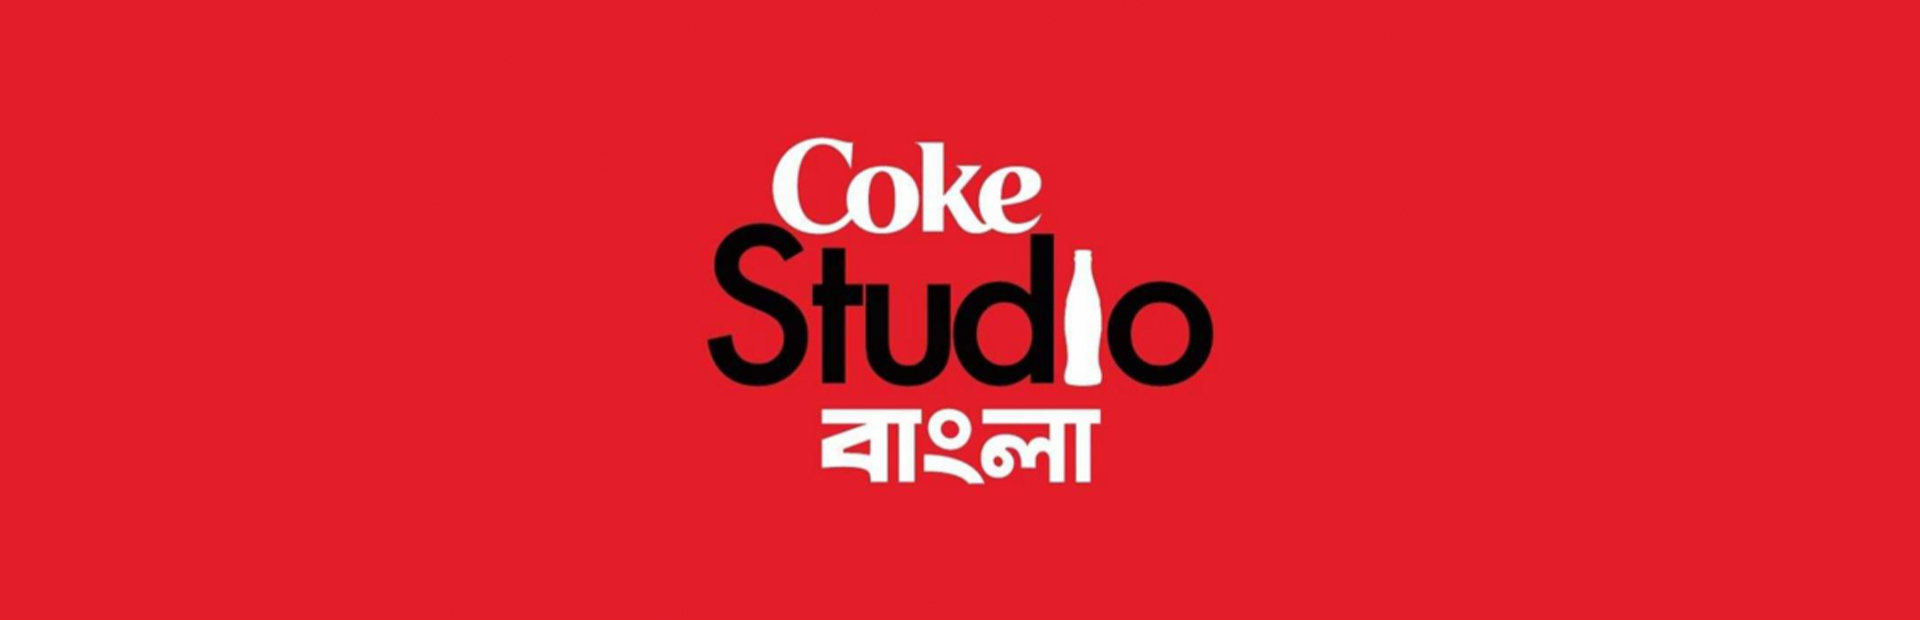 Coke Studio Bangla. Photo: Collected 